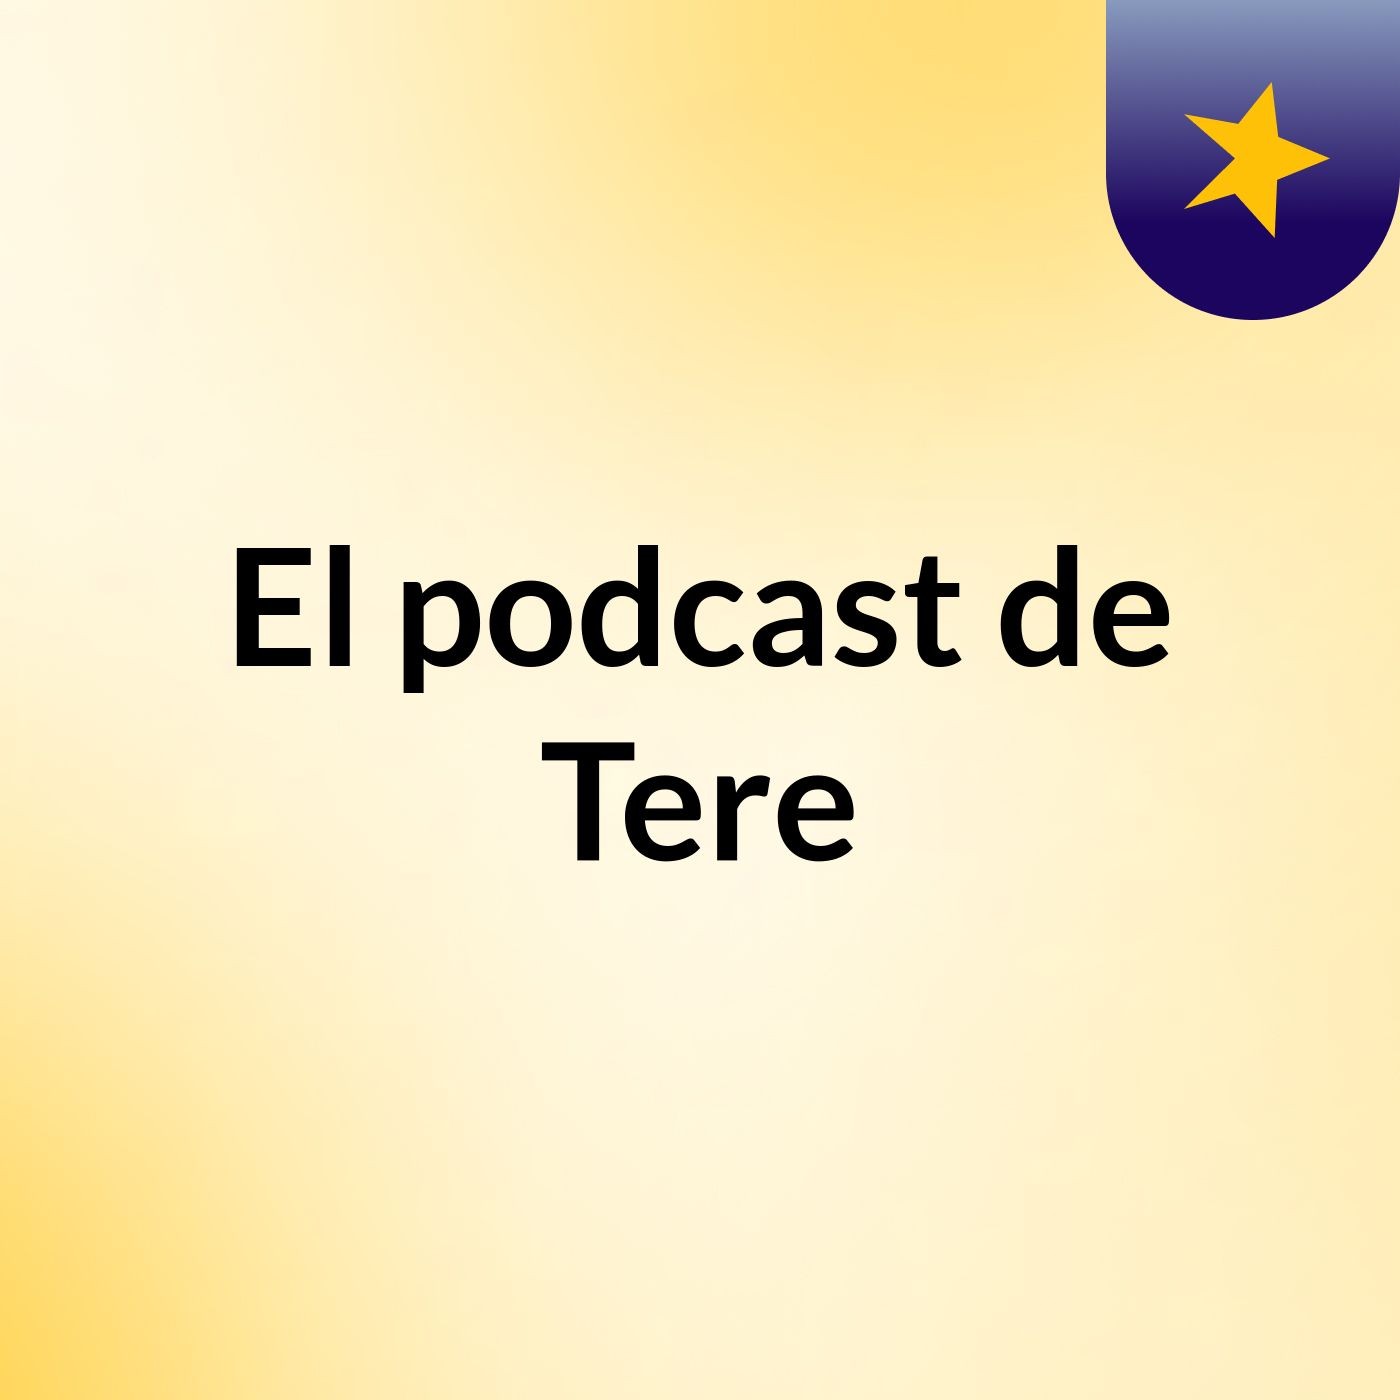 El podcast de Tere